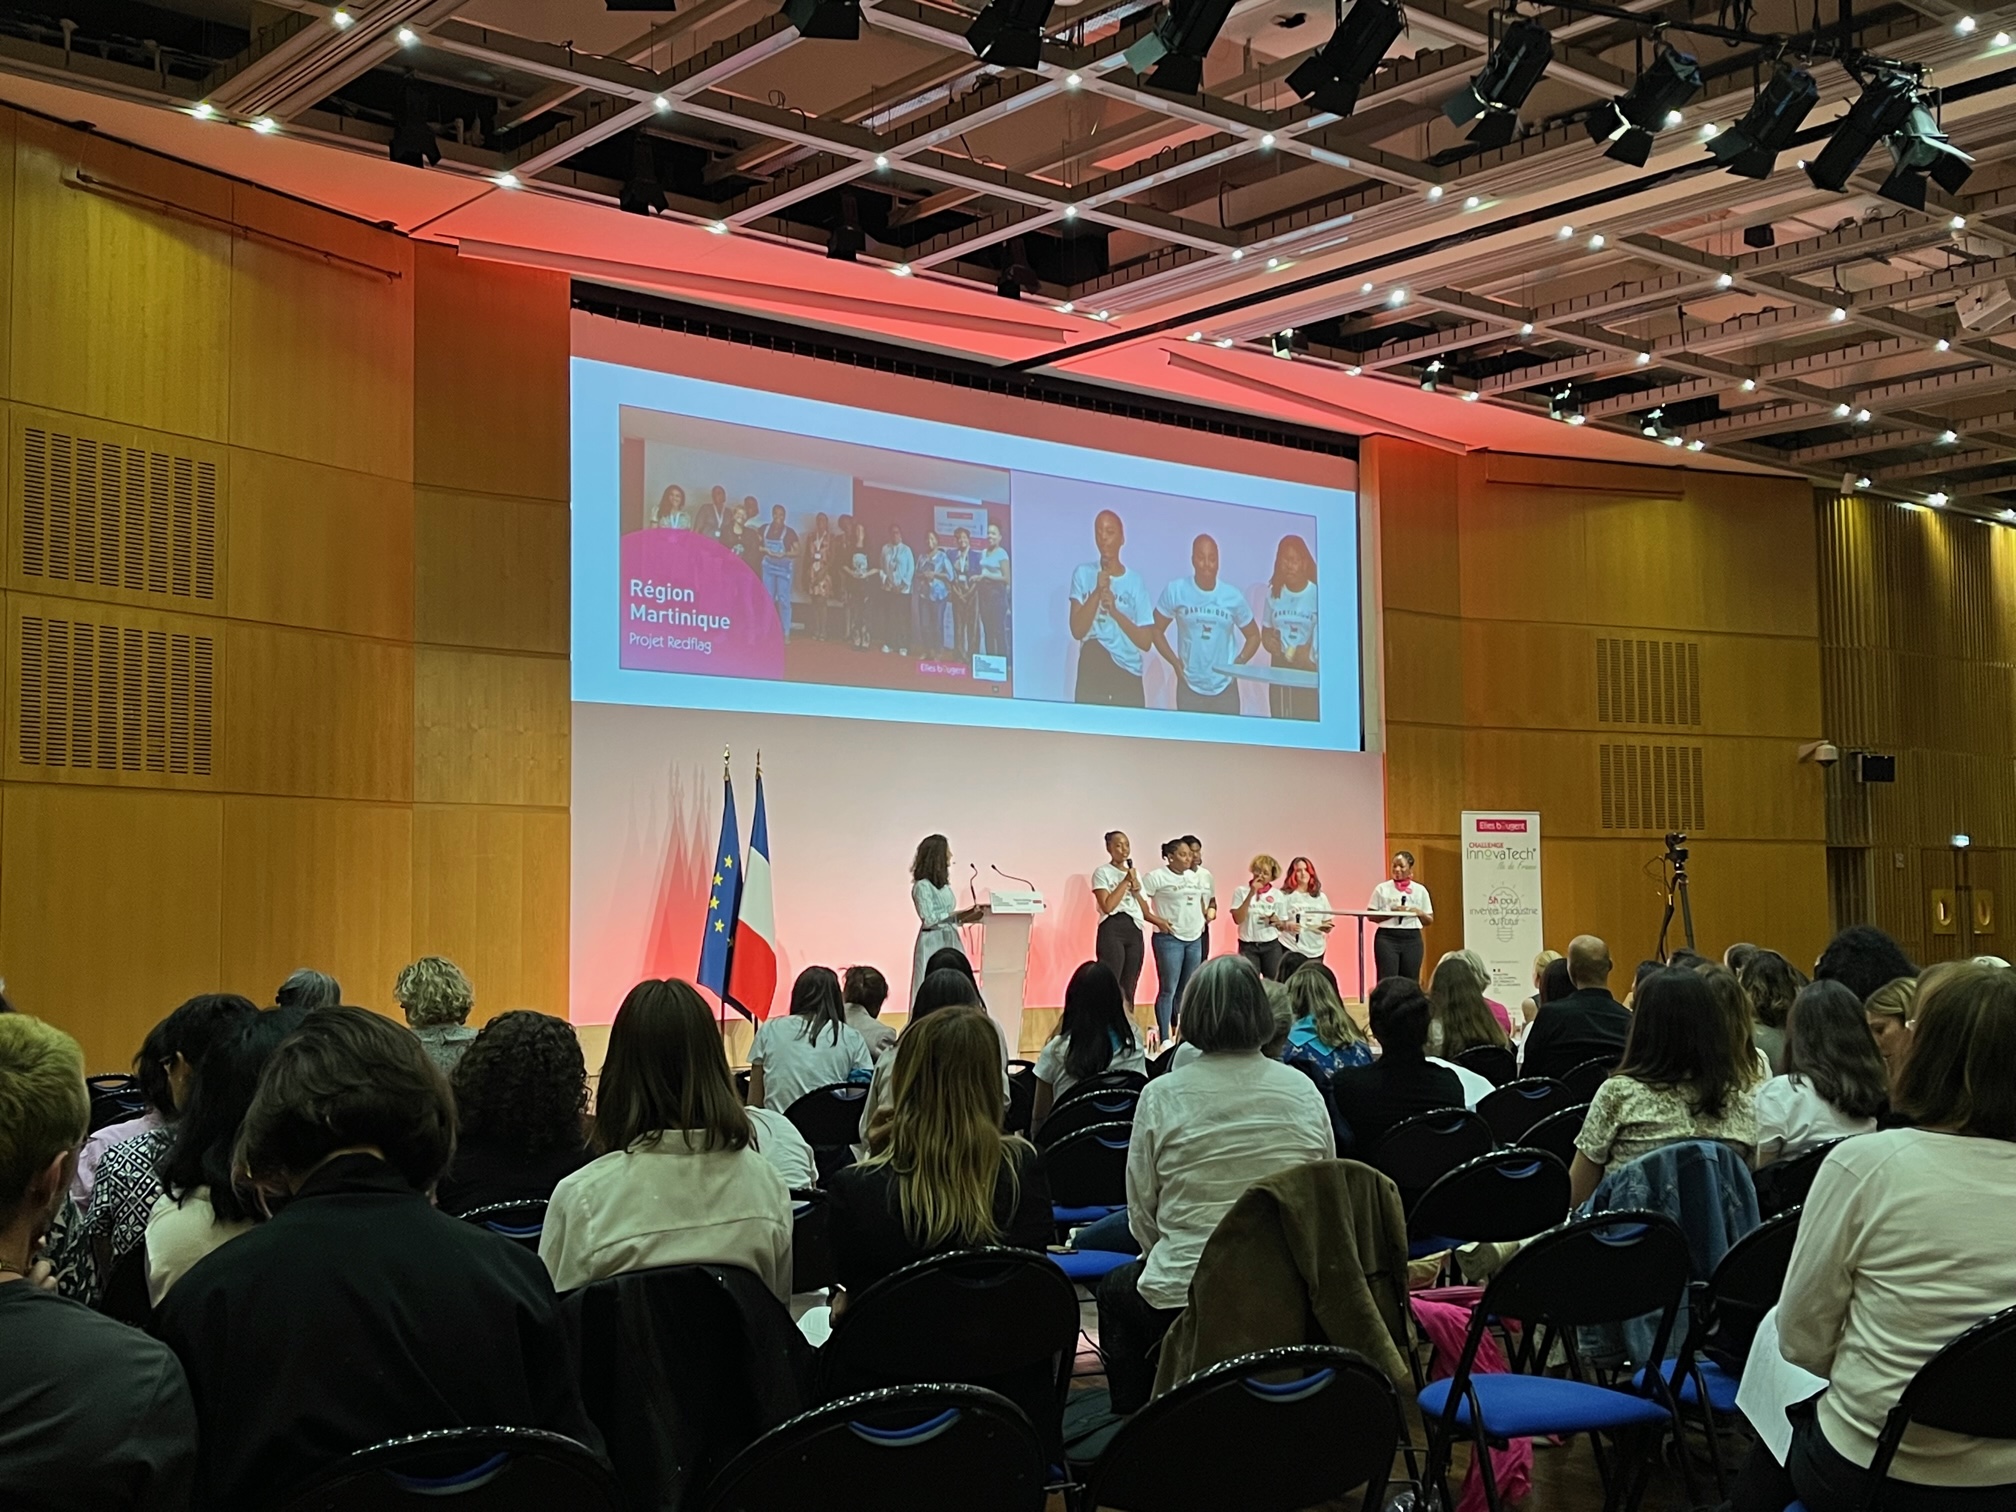     Une application mobile envoie des jeunes Martiniquaises à Paris

